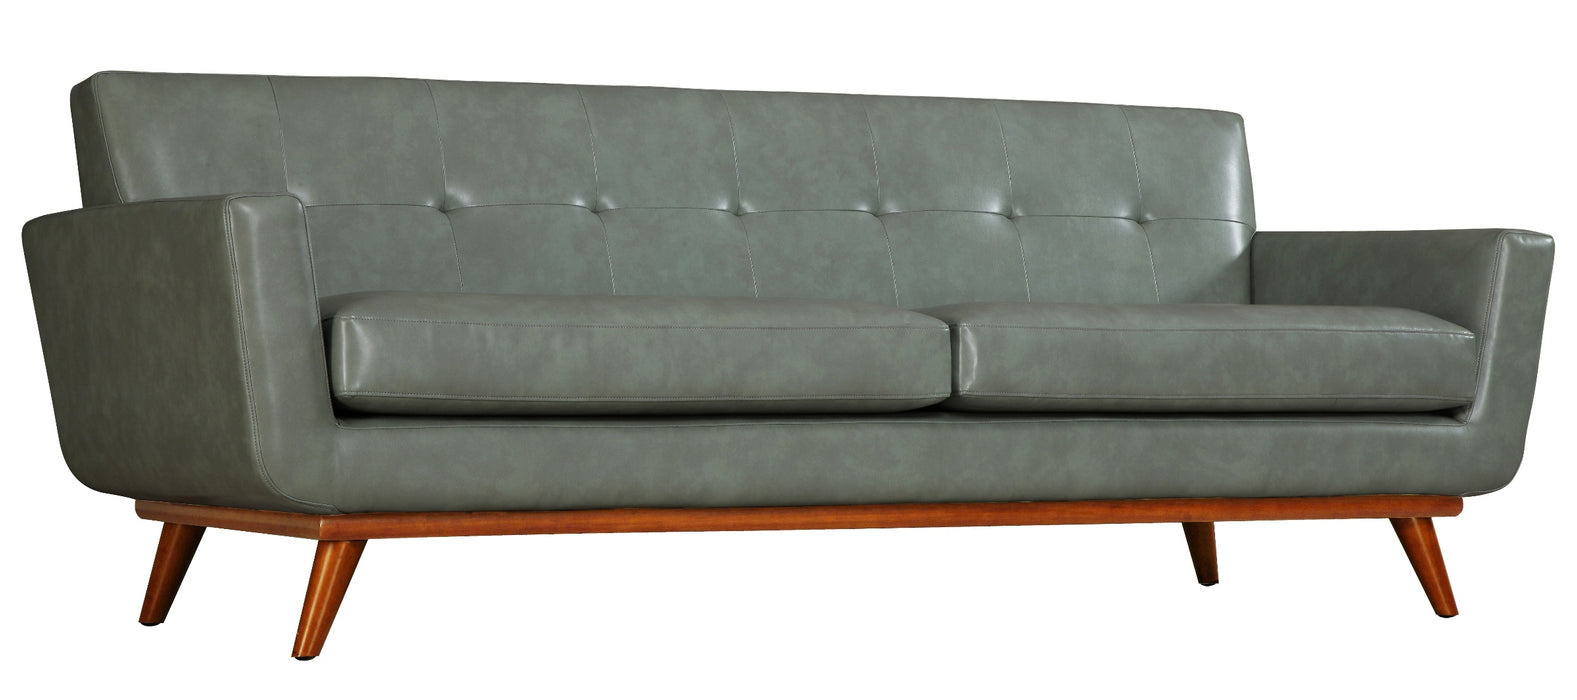 Lyon Smoke Grey Leather Sofa